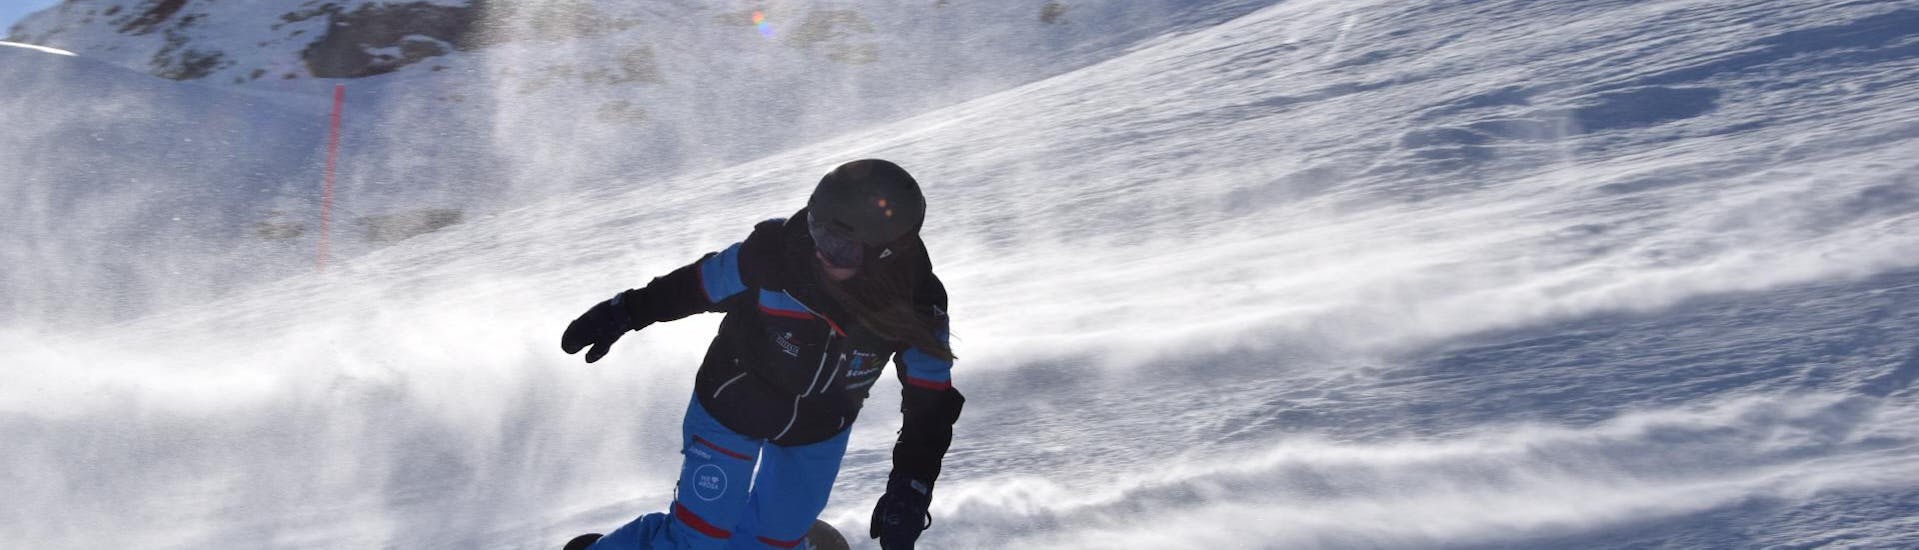 Clases de snowboard privadas para todos los niveles con ABC Snowsport School Arosa.